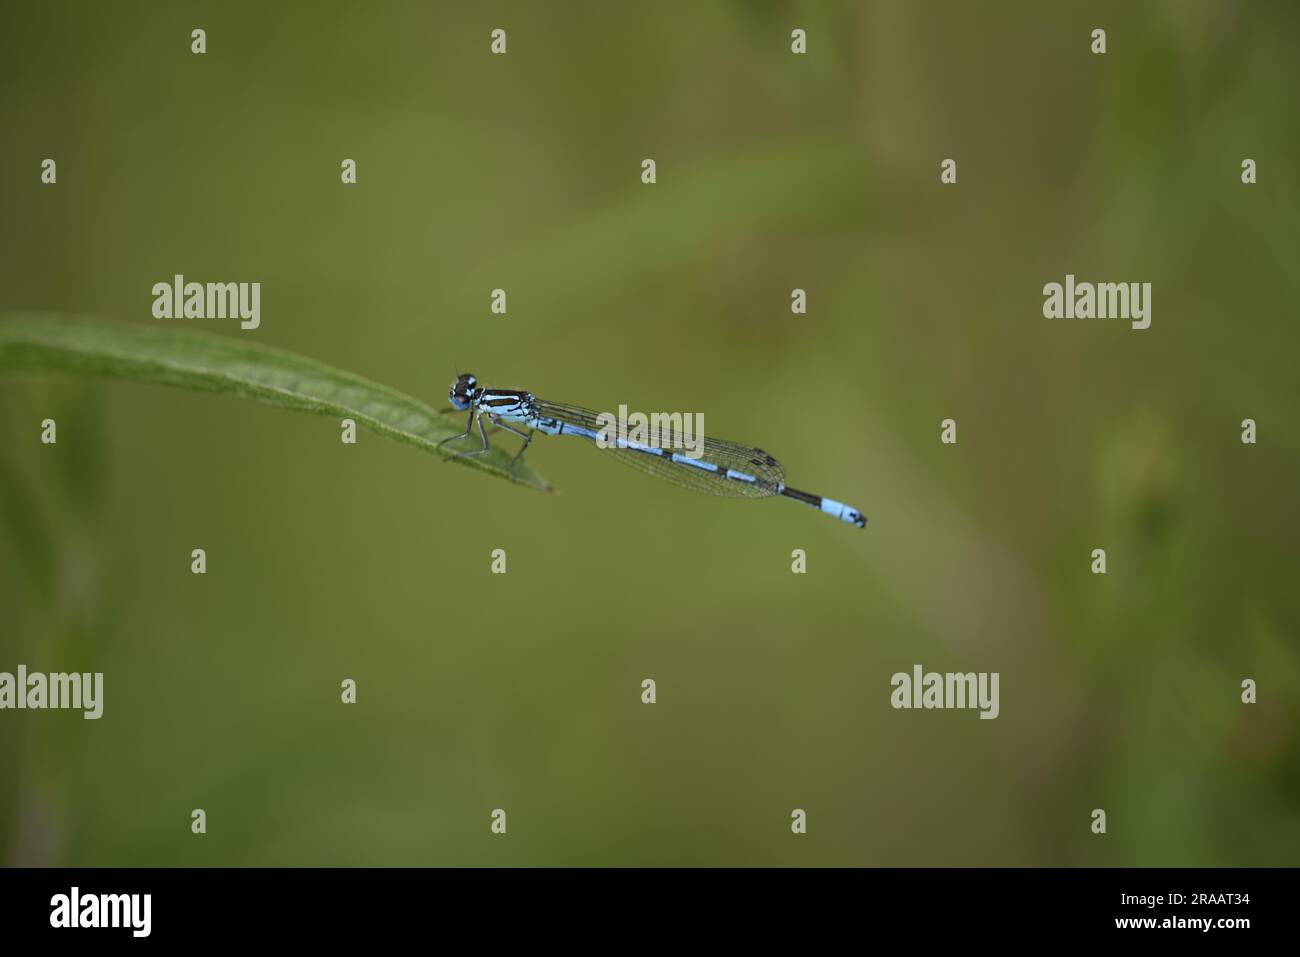 Makrobild des männlichen Azure Damselfly (Caenagrion puella), hoch oben im linken Profil am Rand eines Grasstiels links vom Bild, vor grünem Hintergrund Stockfoto